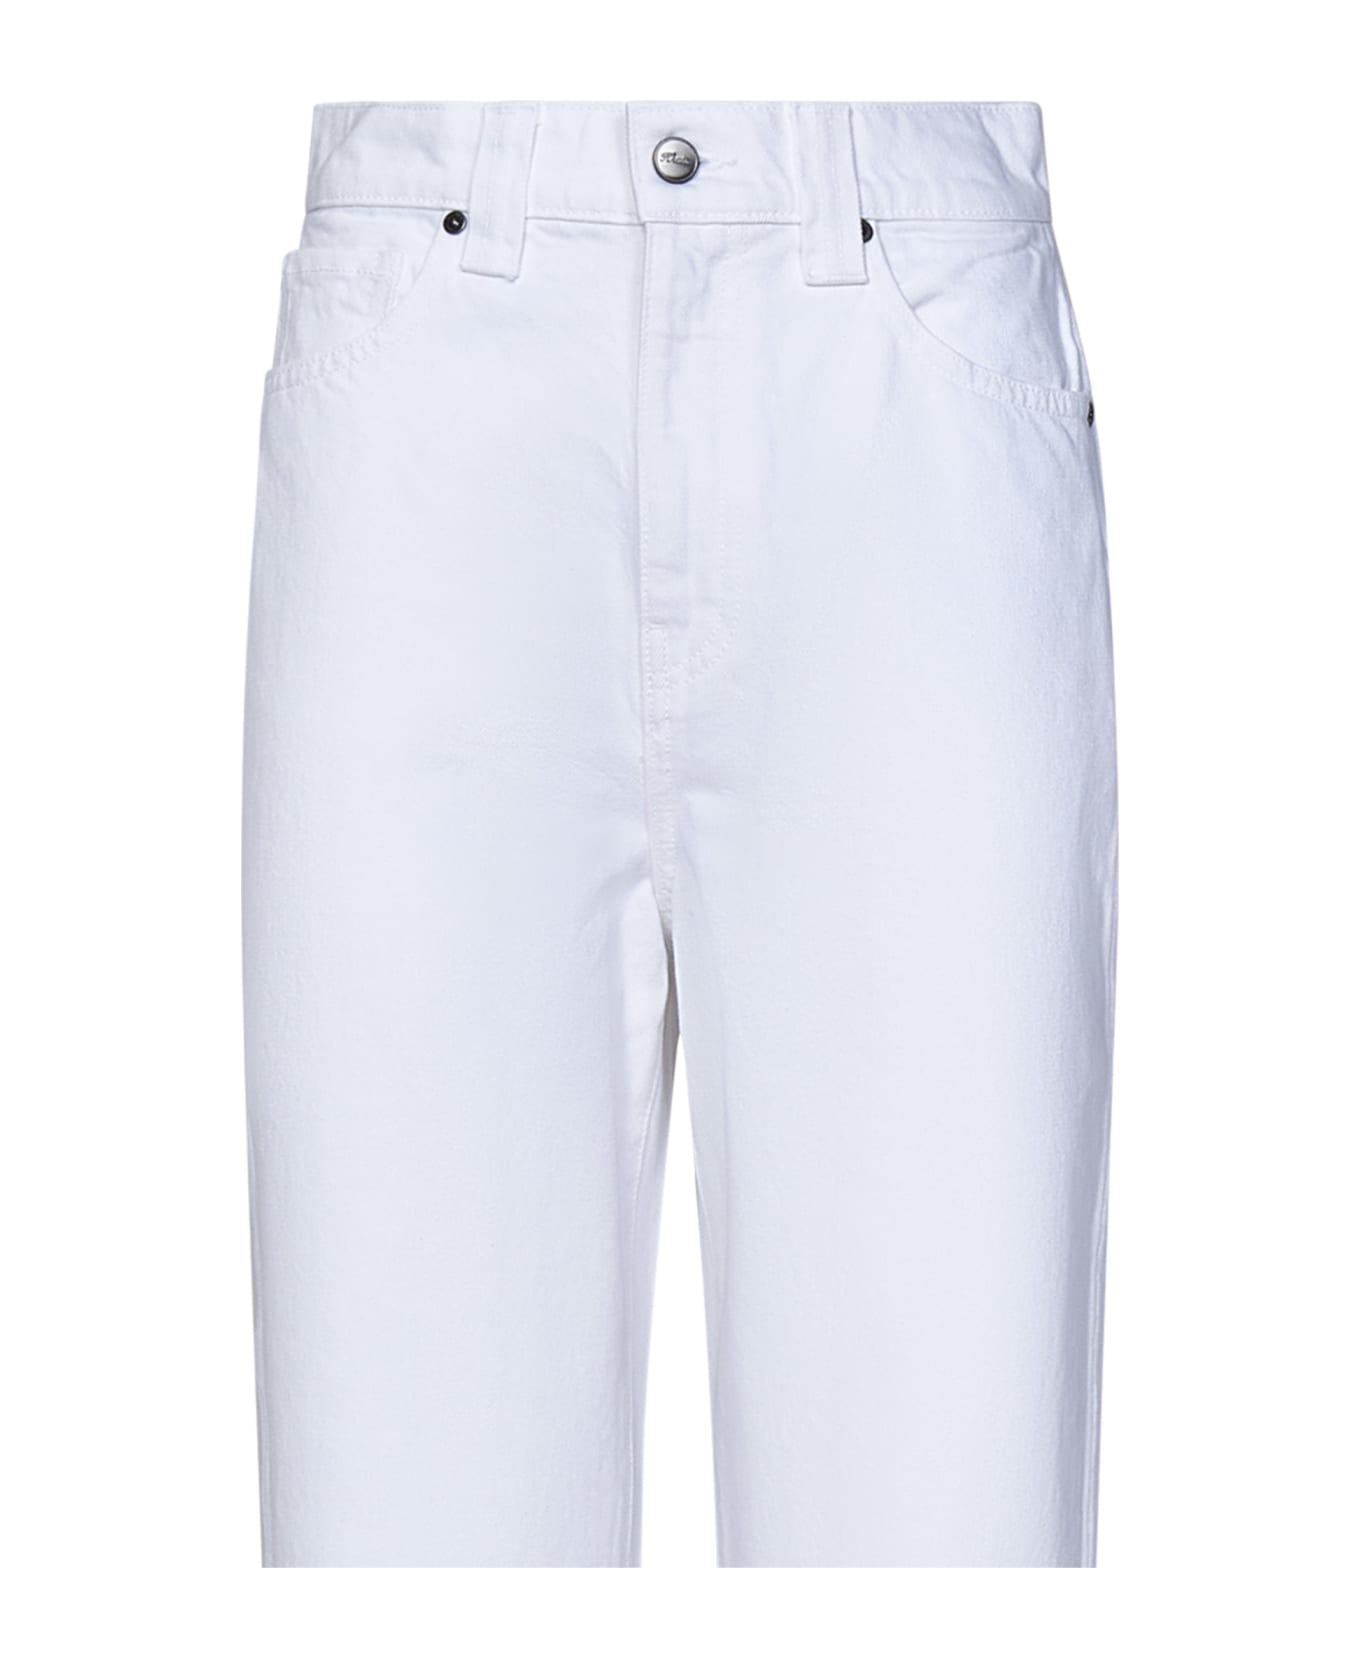 Khaite The Shalbi Jeans - White デニム